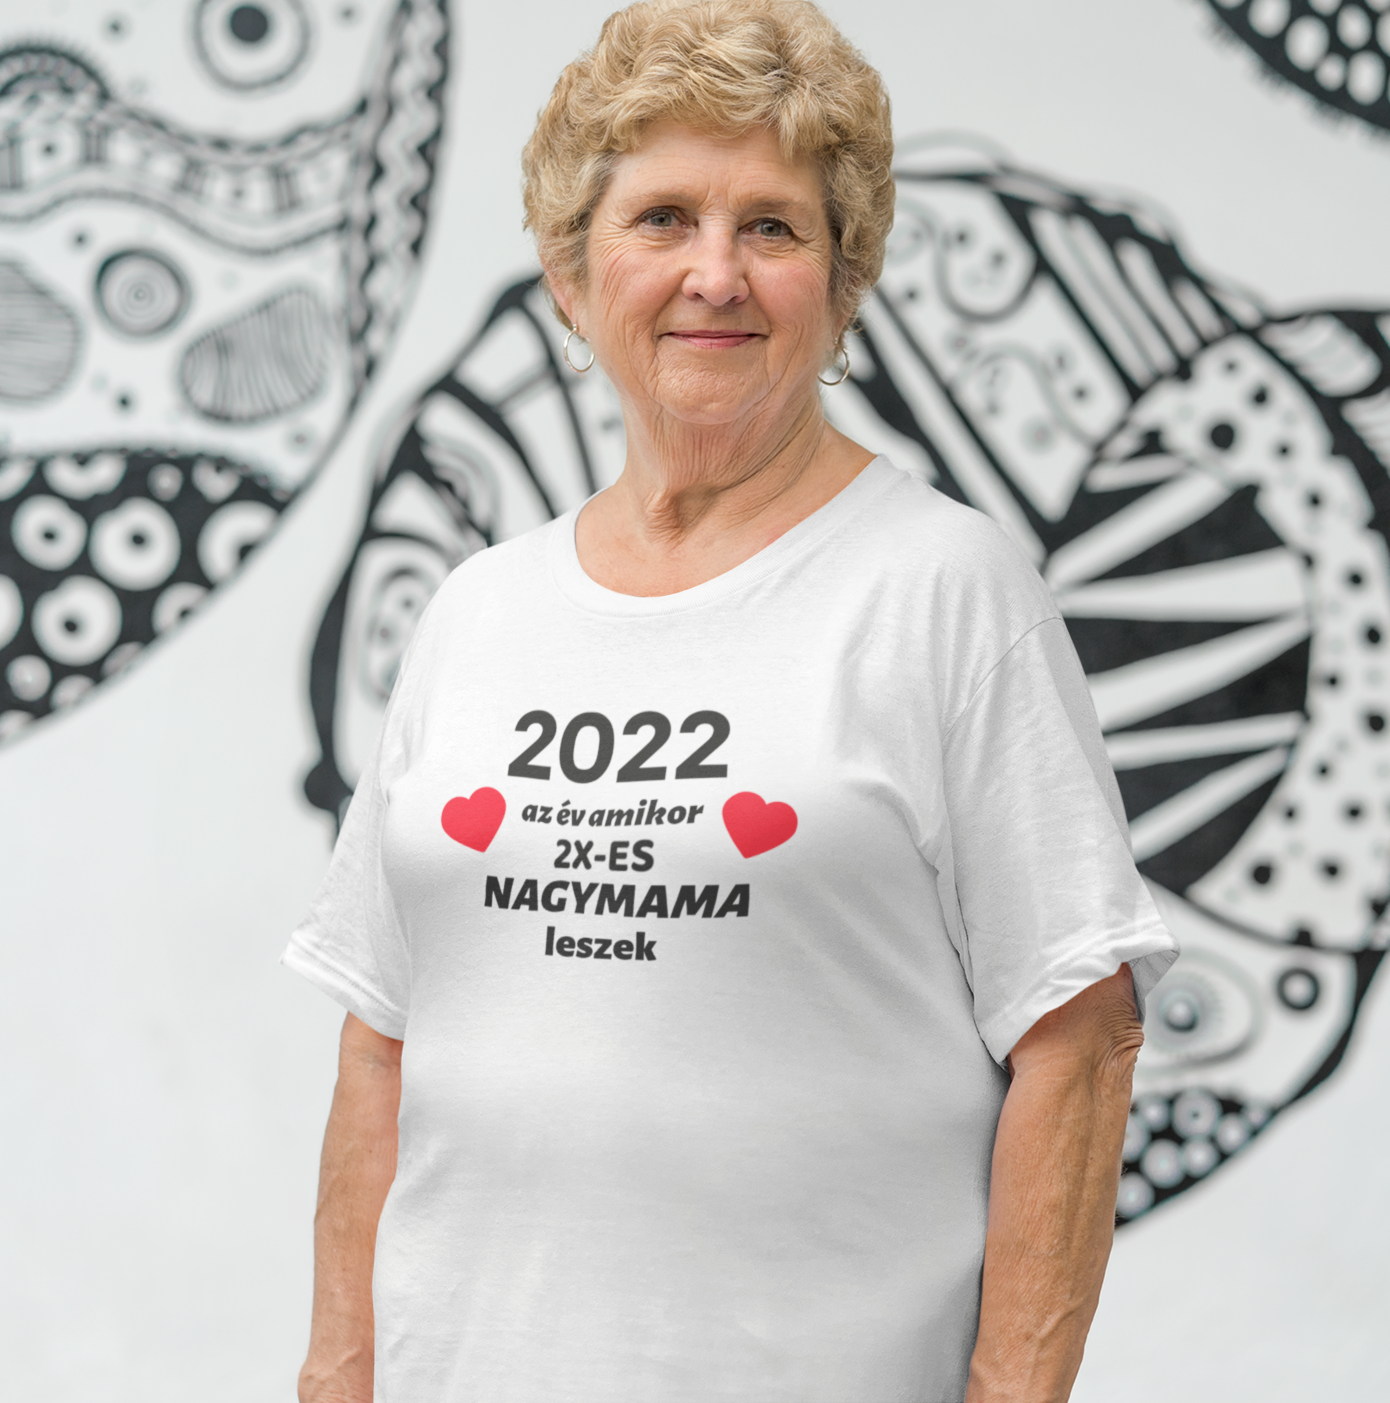 2022 az év amikor 2x-es nagymama leszek